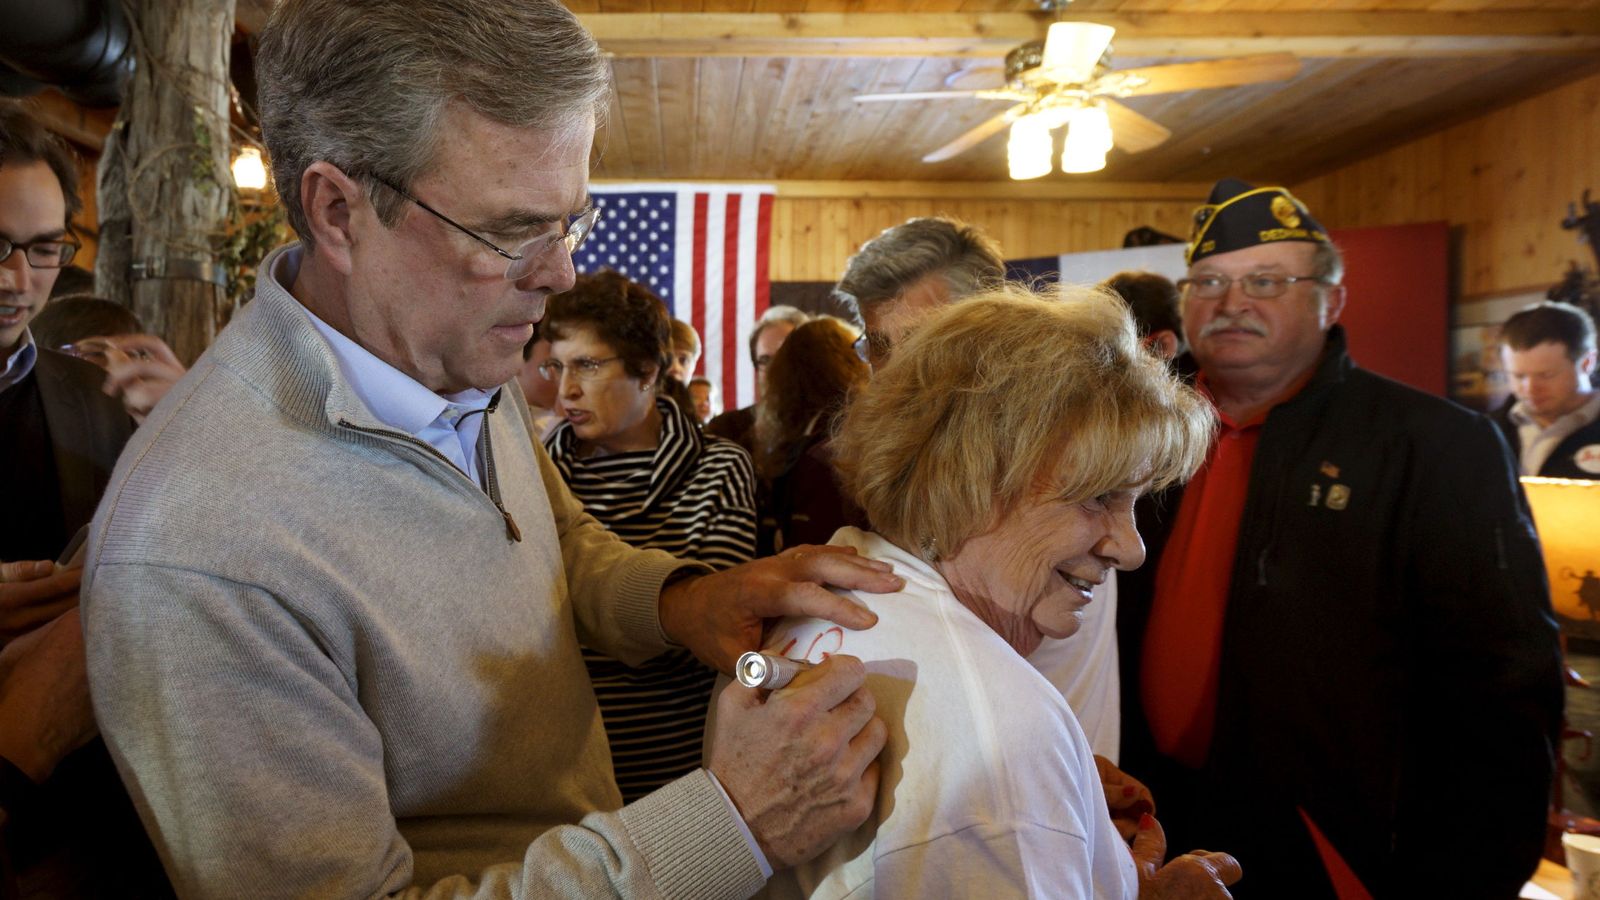 Foto: El candidato Jeb Bush reparte autógrafos en un evento de campaña en Carroll, Iowa, el 29 de enero de 2016. (Reuters)